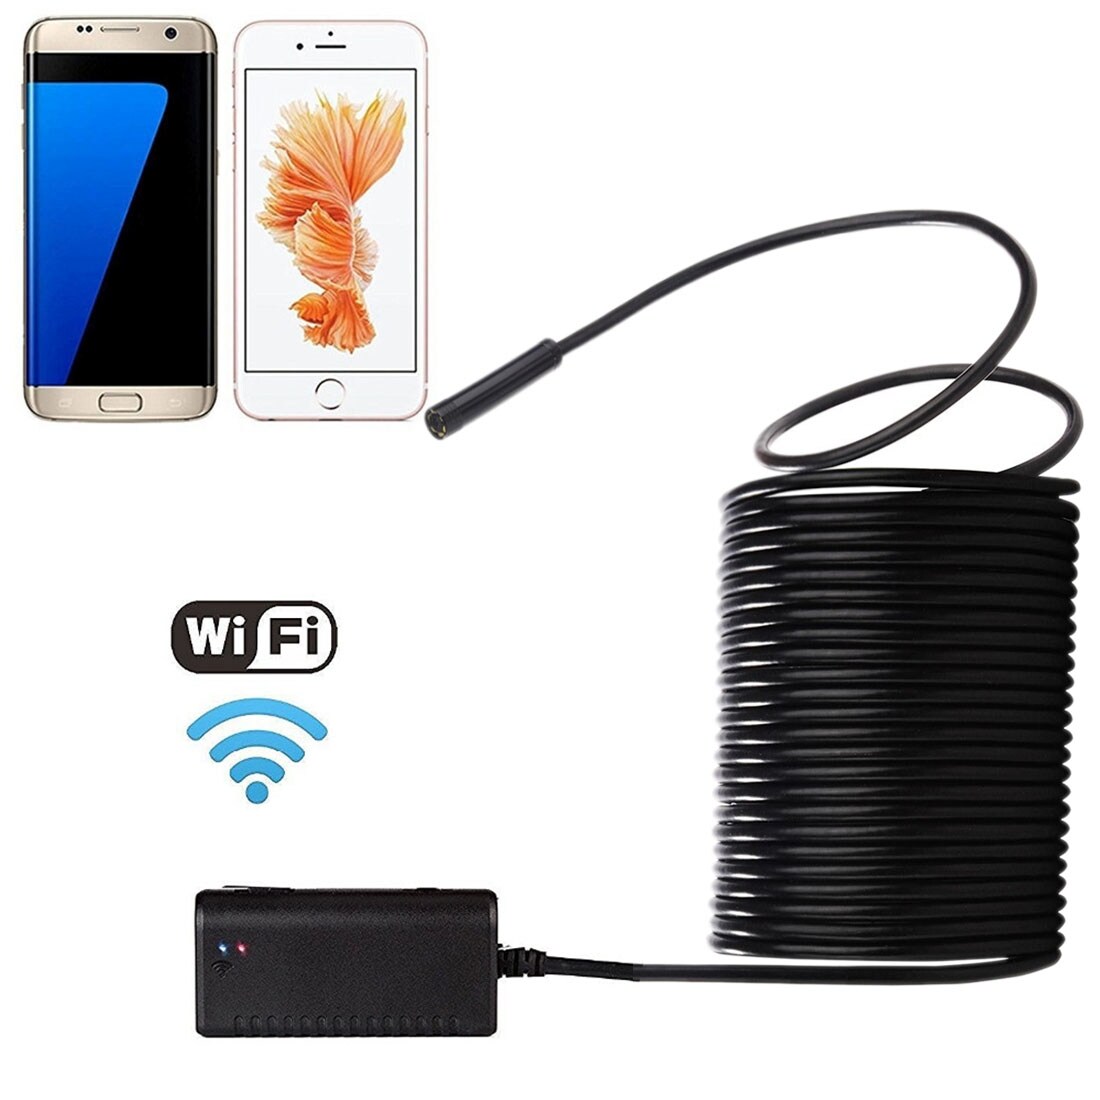 Wi-Fi 10M Inspektionskamera Mobiltelefon - Android & iOS